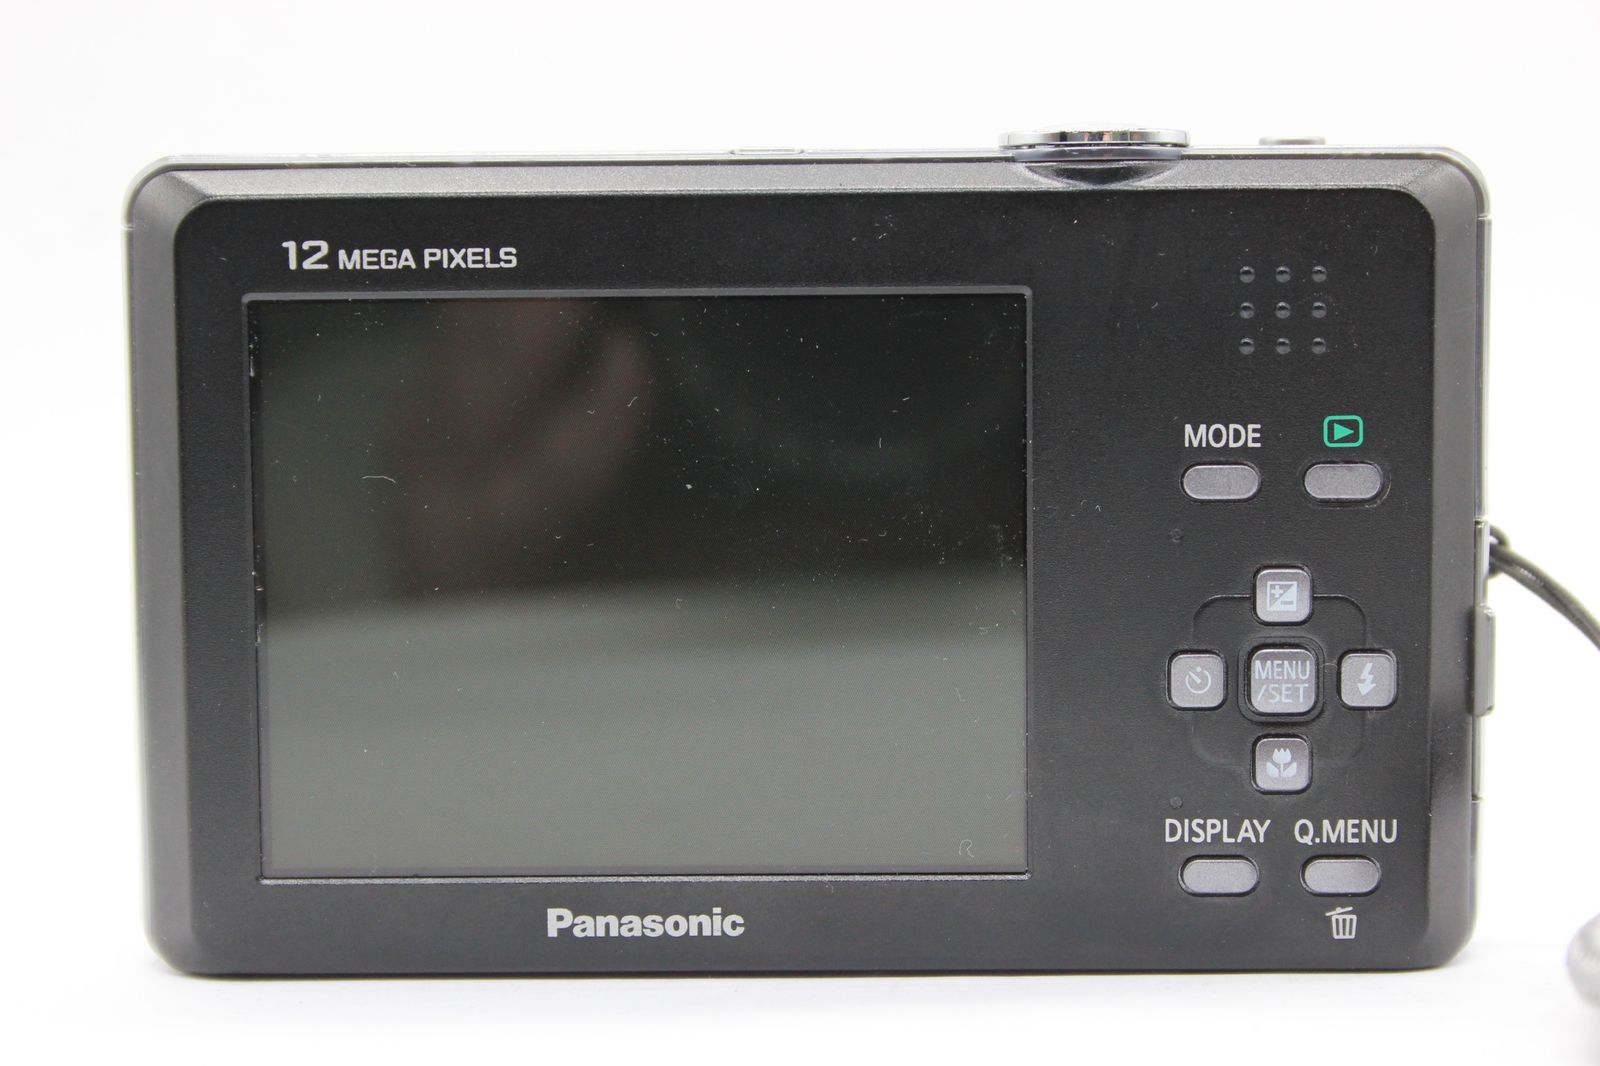 返品保証】 【元箱付き】パナソニック Panasonic LUMIX DMC-FP1 ピンク ...